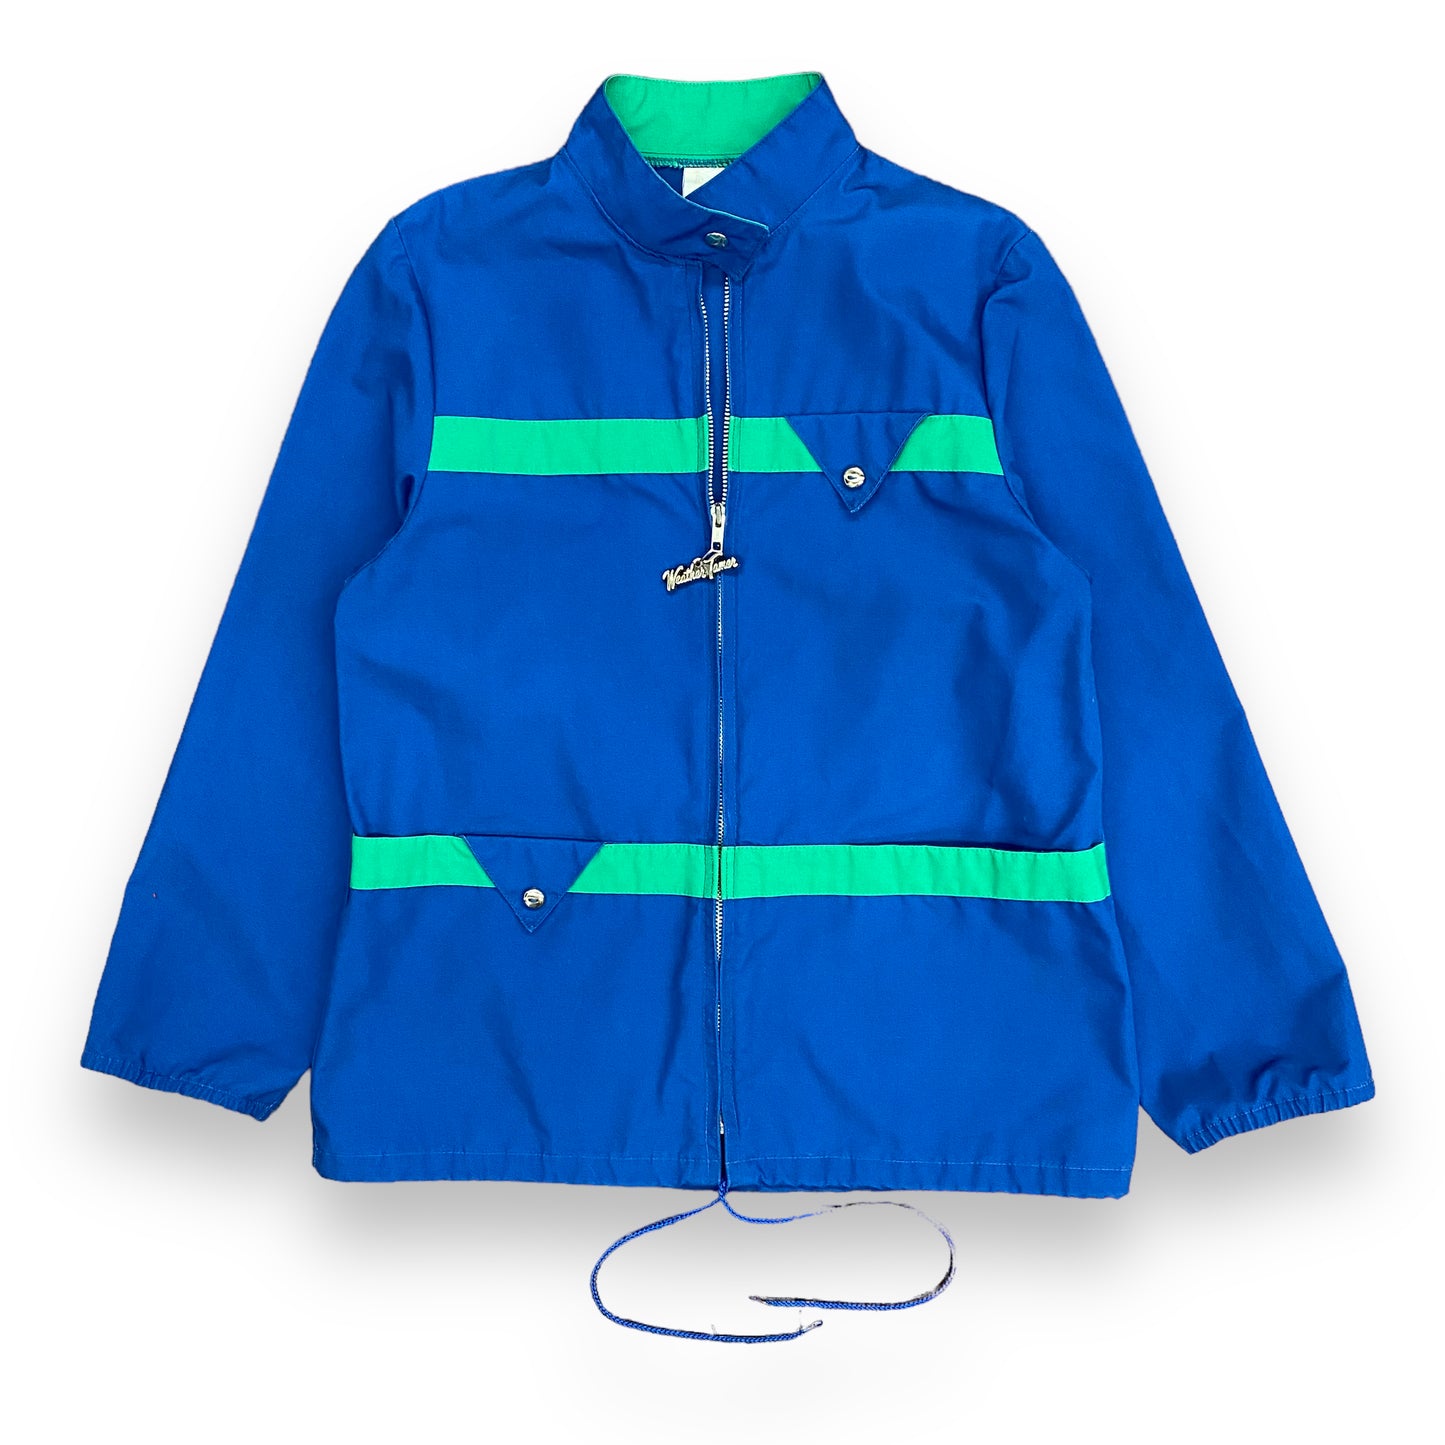 Vintage 1980s Weather Tamer Blue & Green Light Jacket - Size Medium